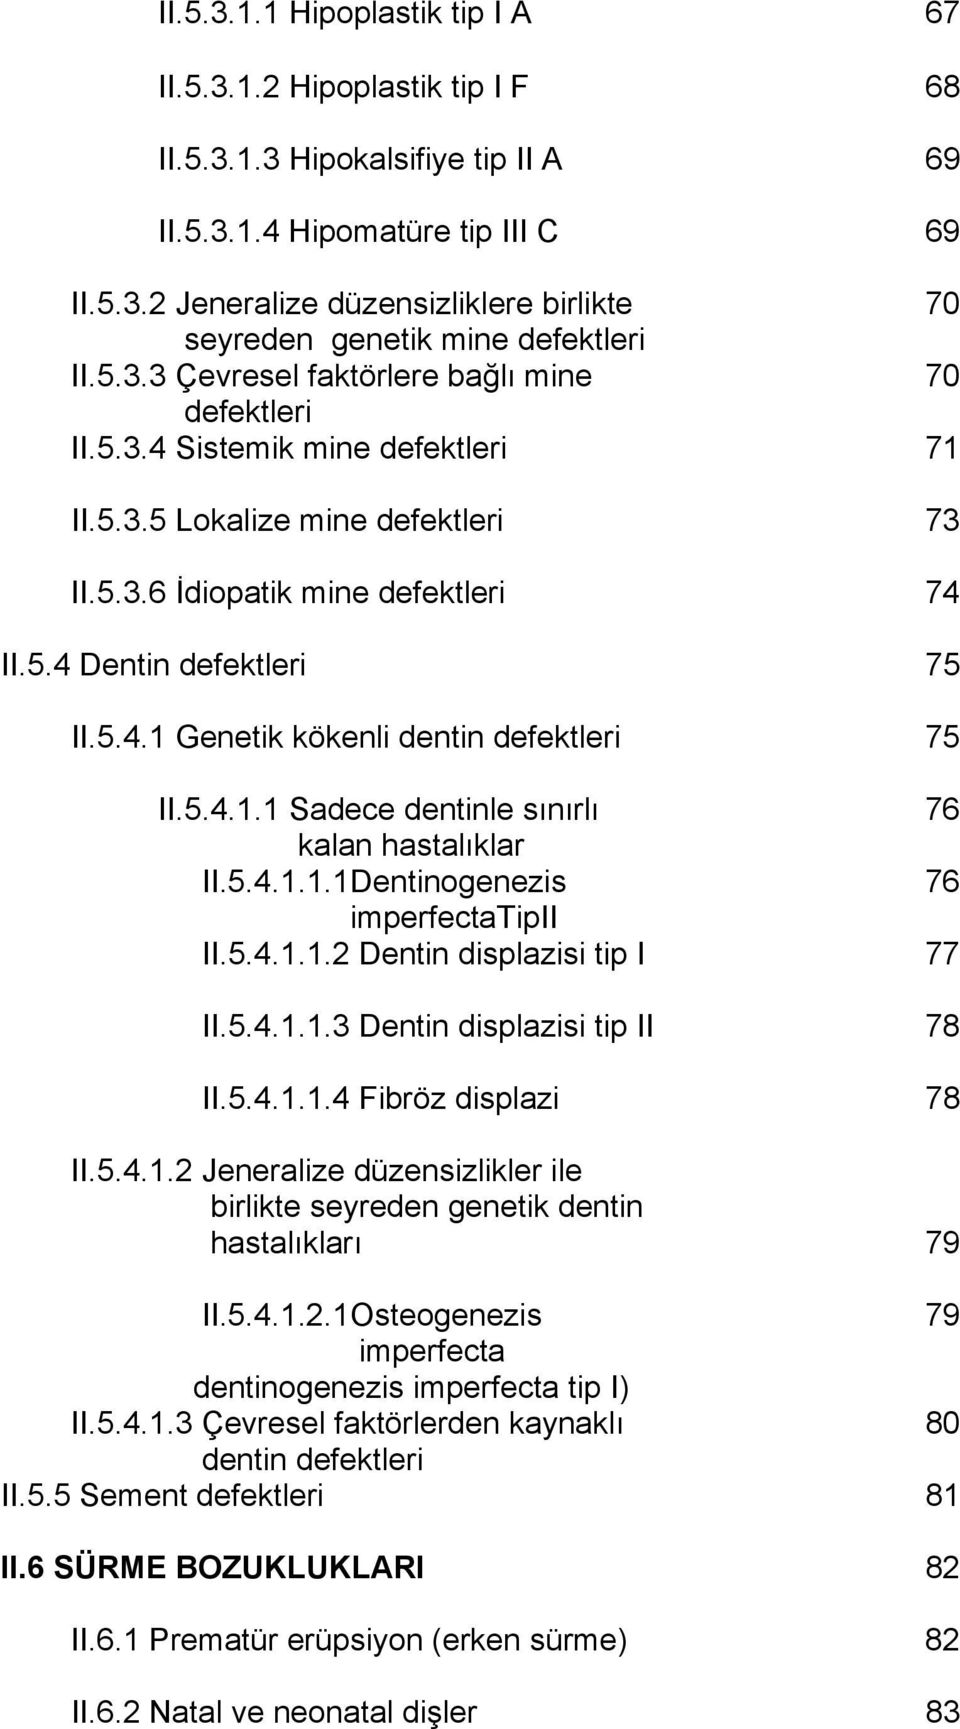 5.4.1.1 Sadece dentinle sınırlı 76 kalan hastalıklar II.5.4.1.1.1Dentinogenezis 76 imperfectatipii II.5.4.1.1.2 Dentin displazisi tip I 77 II.5.4.1.1.3 Dentin displazisi tip II 78 II.5.4.1.1.4 Fibröz displazi 78 II.